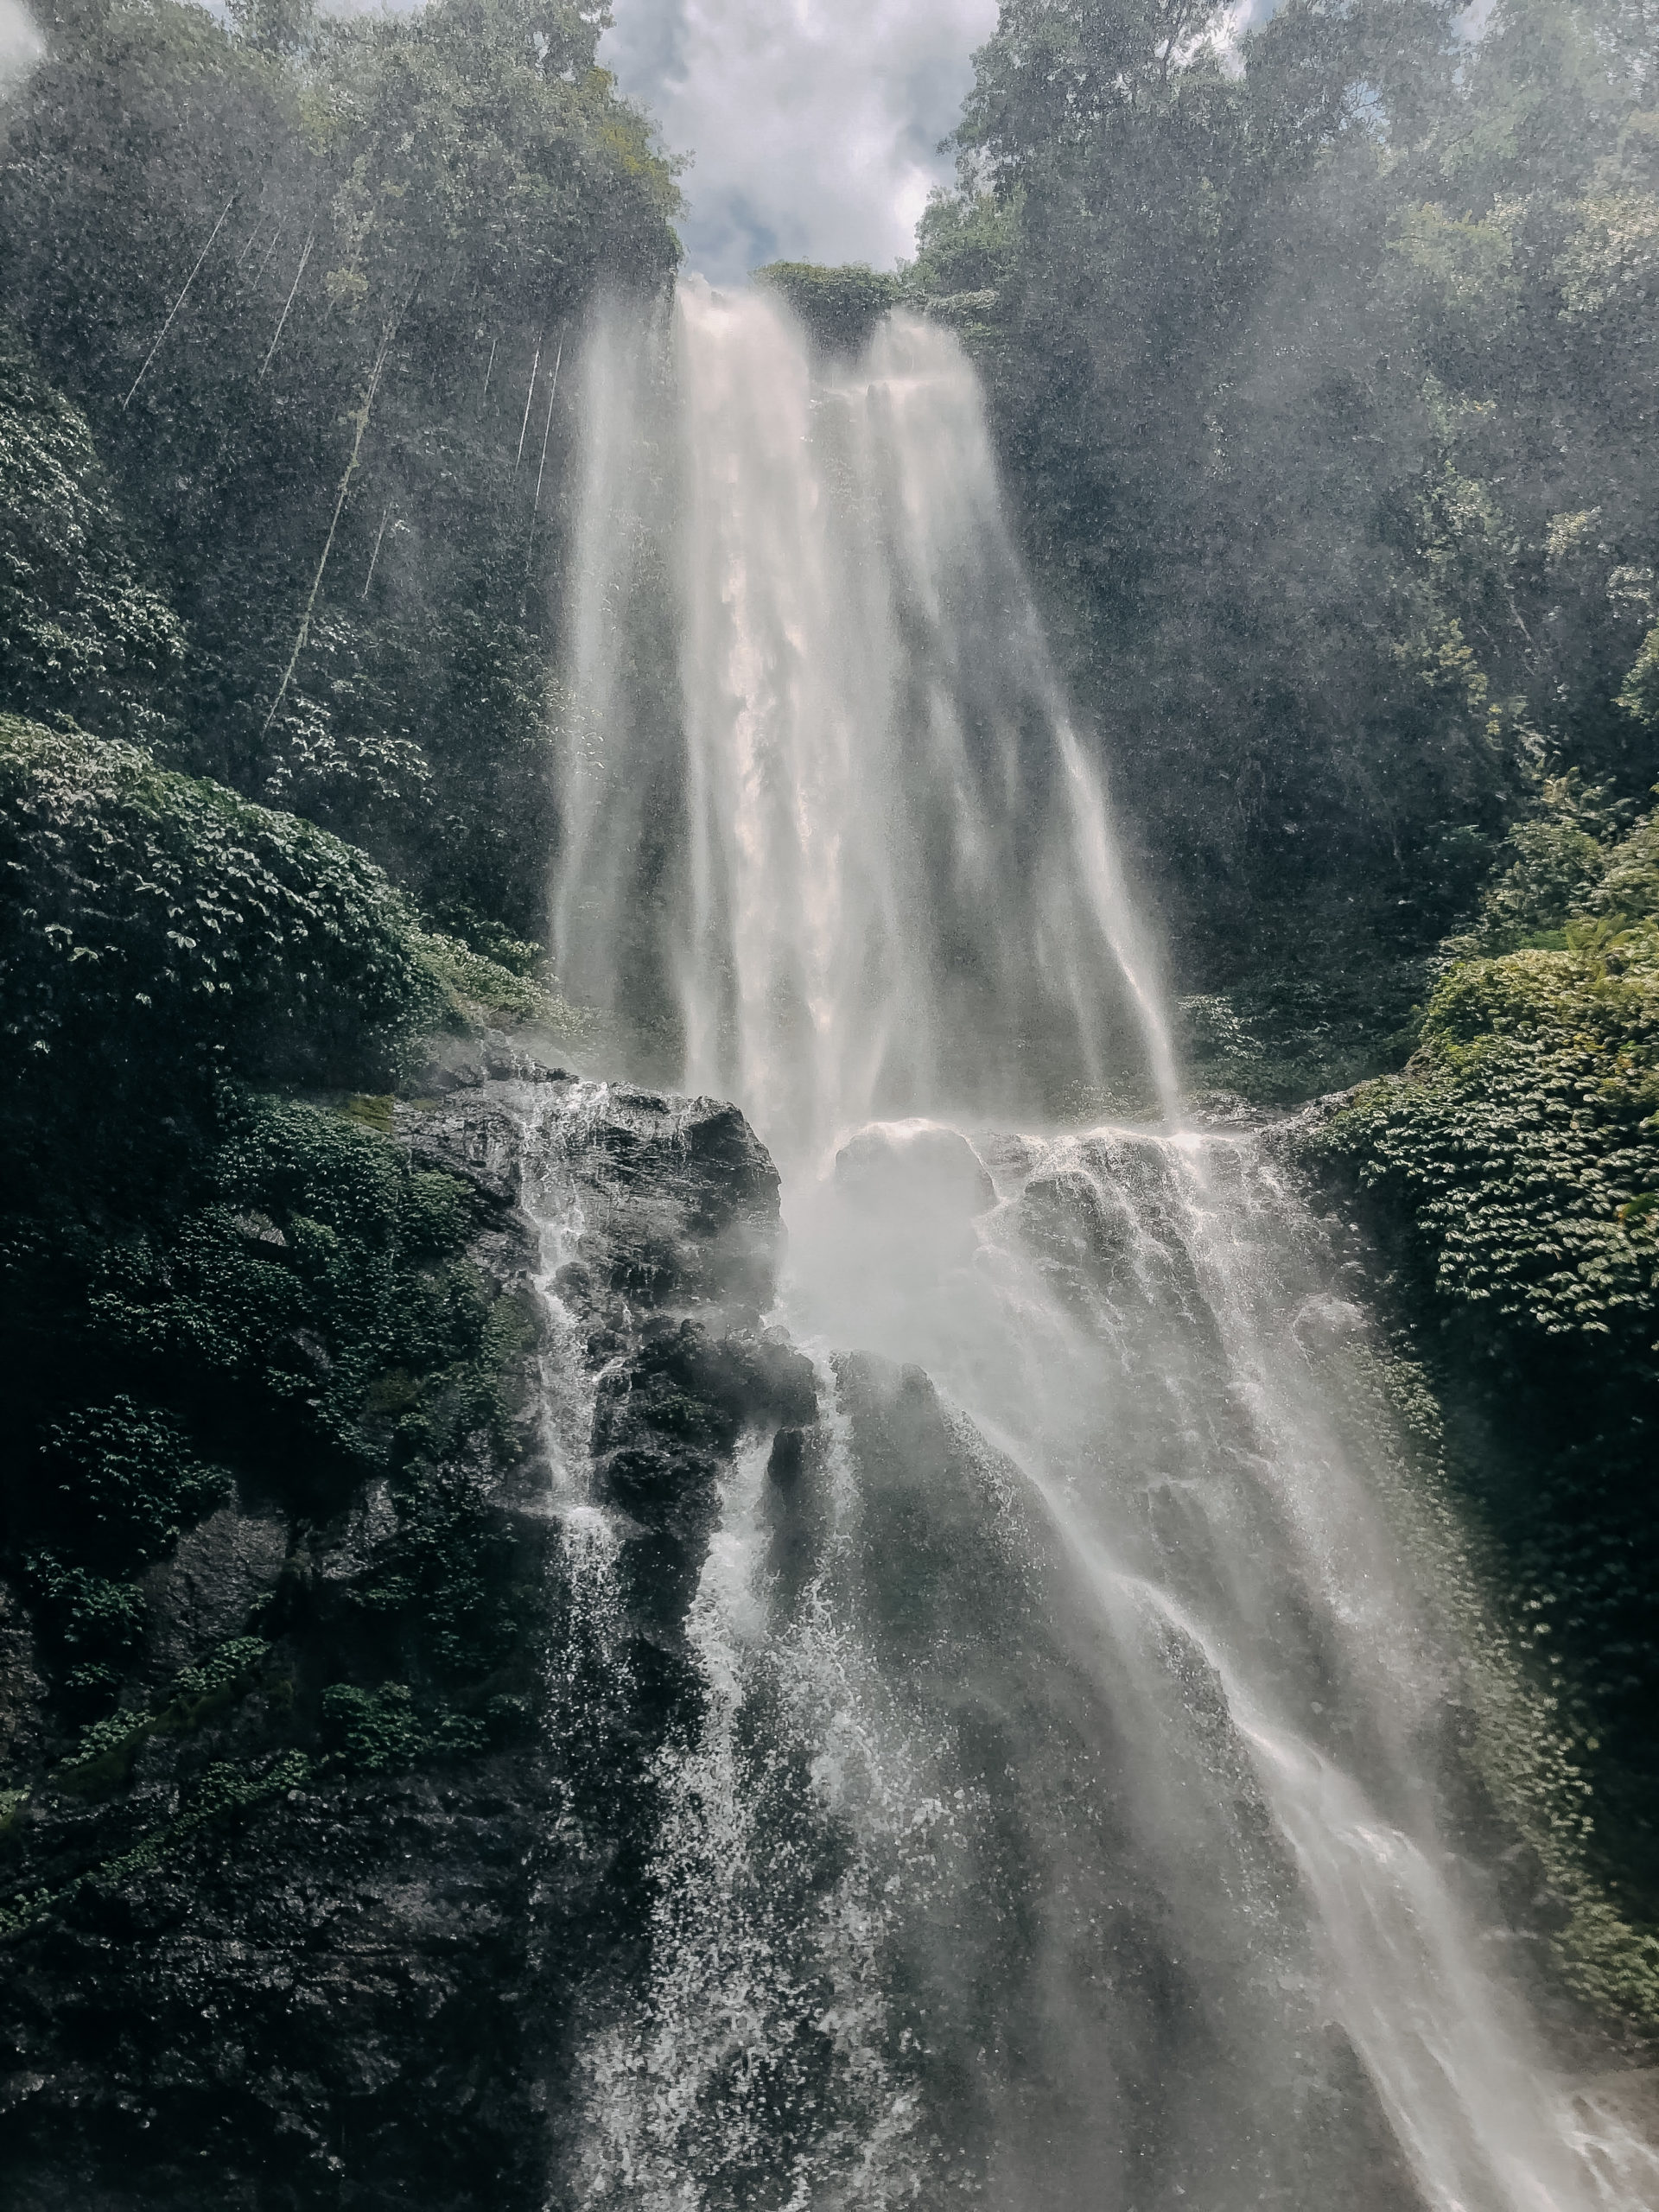 Sekumpul waterfalls Bali